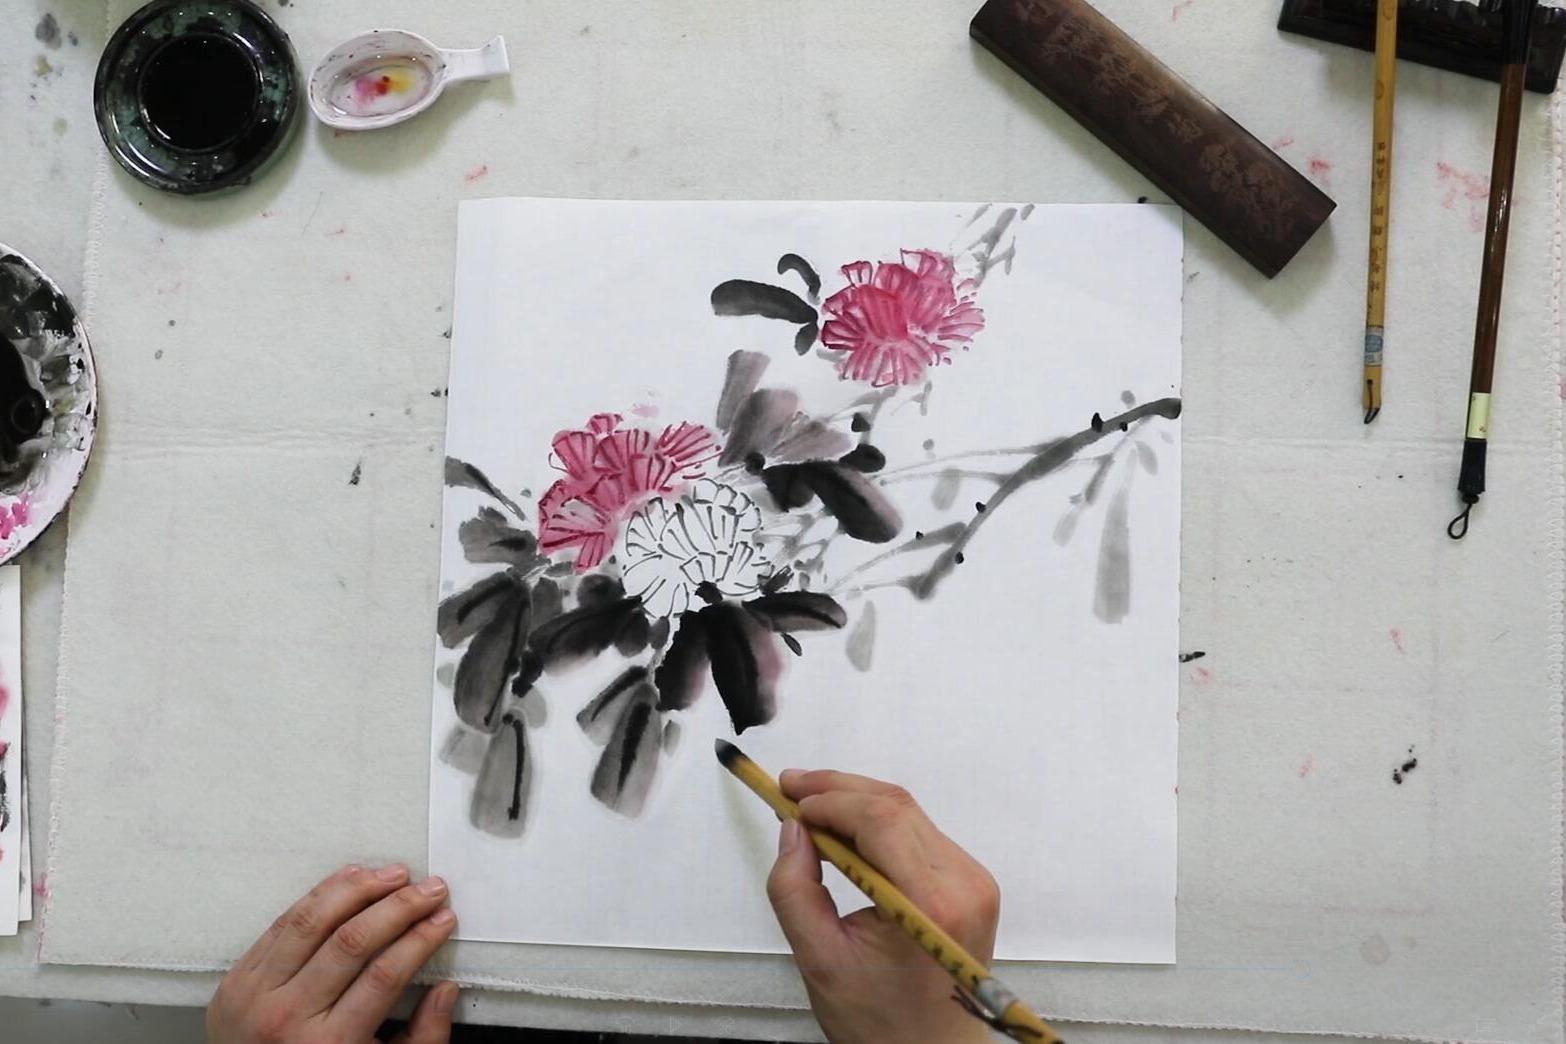 水墨芙蓉画法,中国画绘画艺术欣赏,初级国画教程